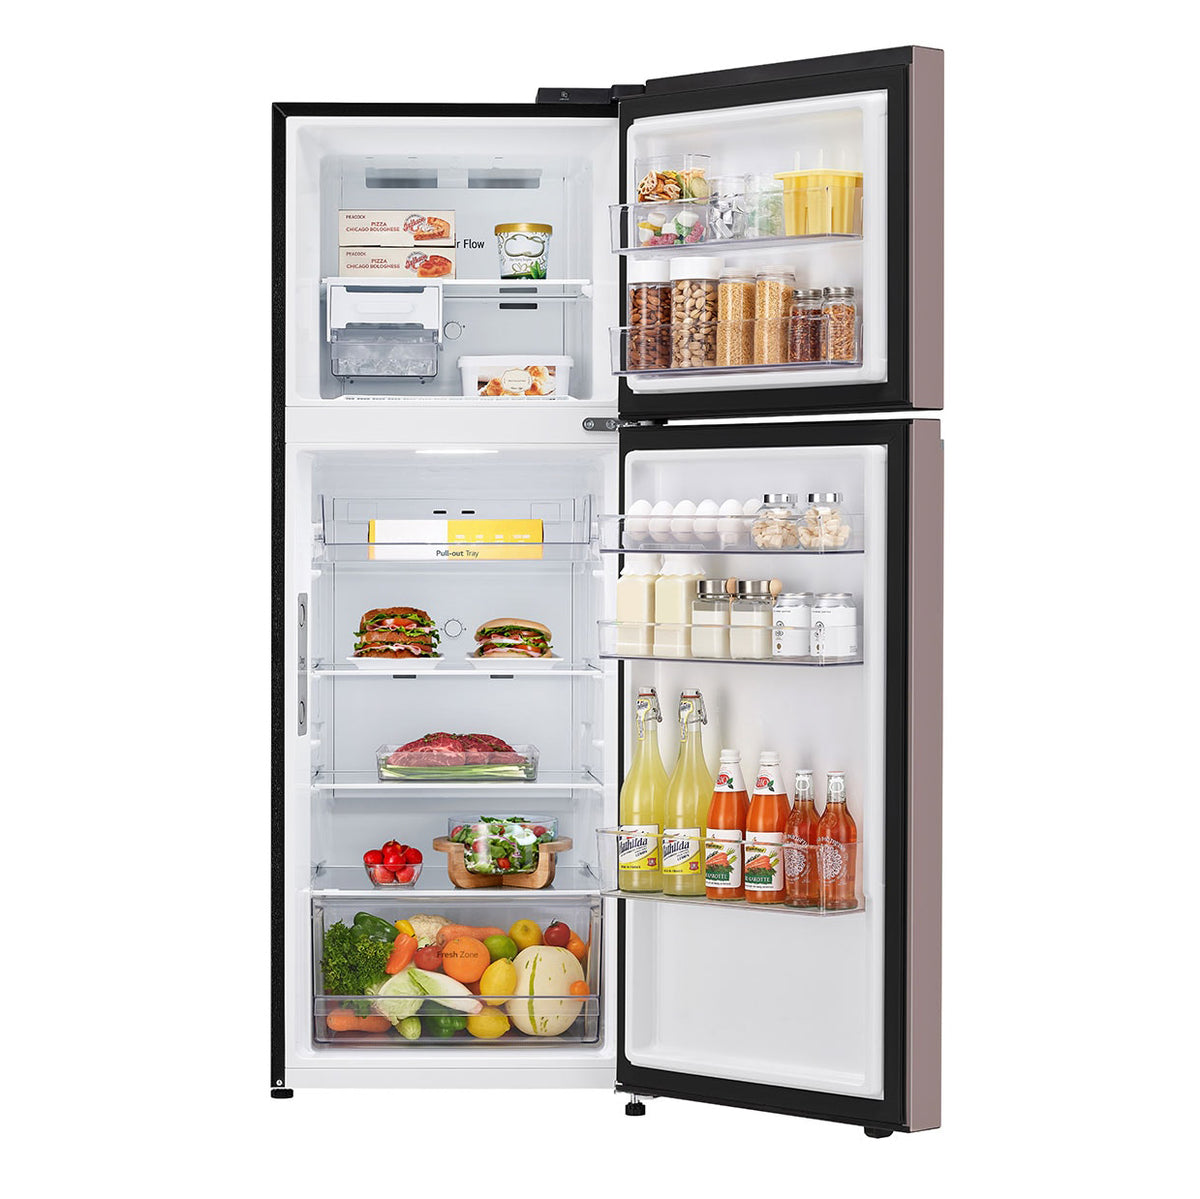 Refrigeradora LG VT38BPK | 14 Pies Cúbicos | Top Mount | Color Rosado - Multimax